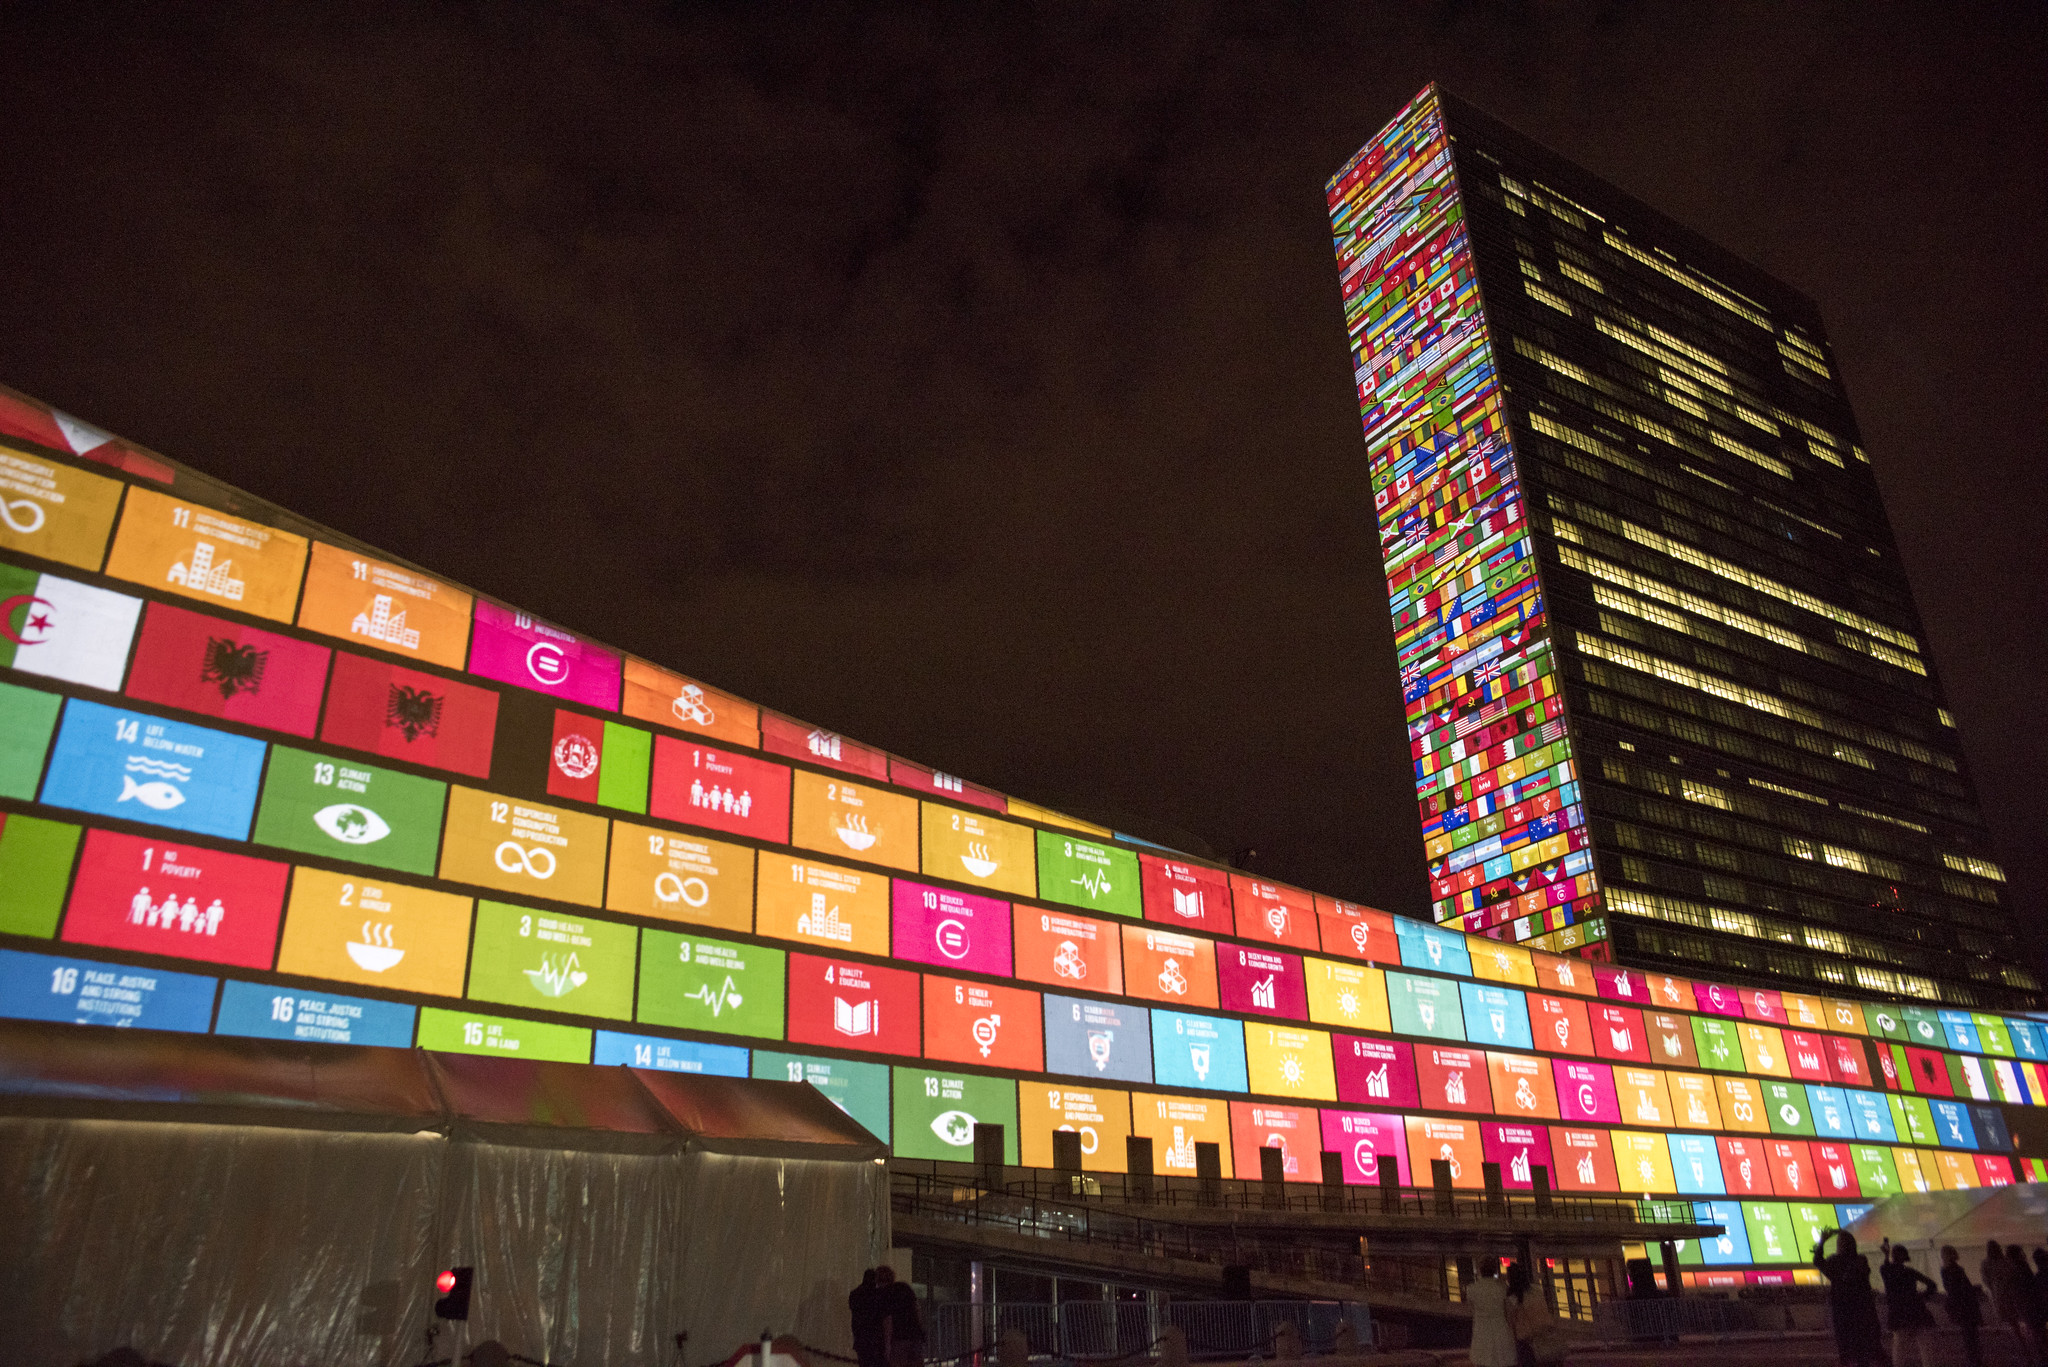 Le bâtiment des Nations Unies à New York lors de la 70e session de l’Assemblée générale des Nations Unies, pendant laquelle les Objectifs de développement durable ont été adoptés. Photo : United Nations Photo.